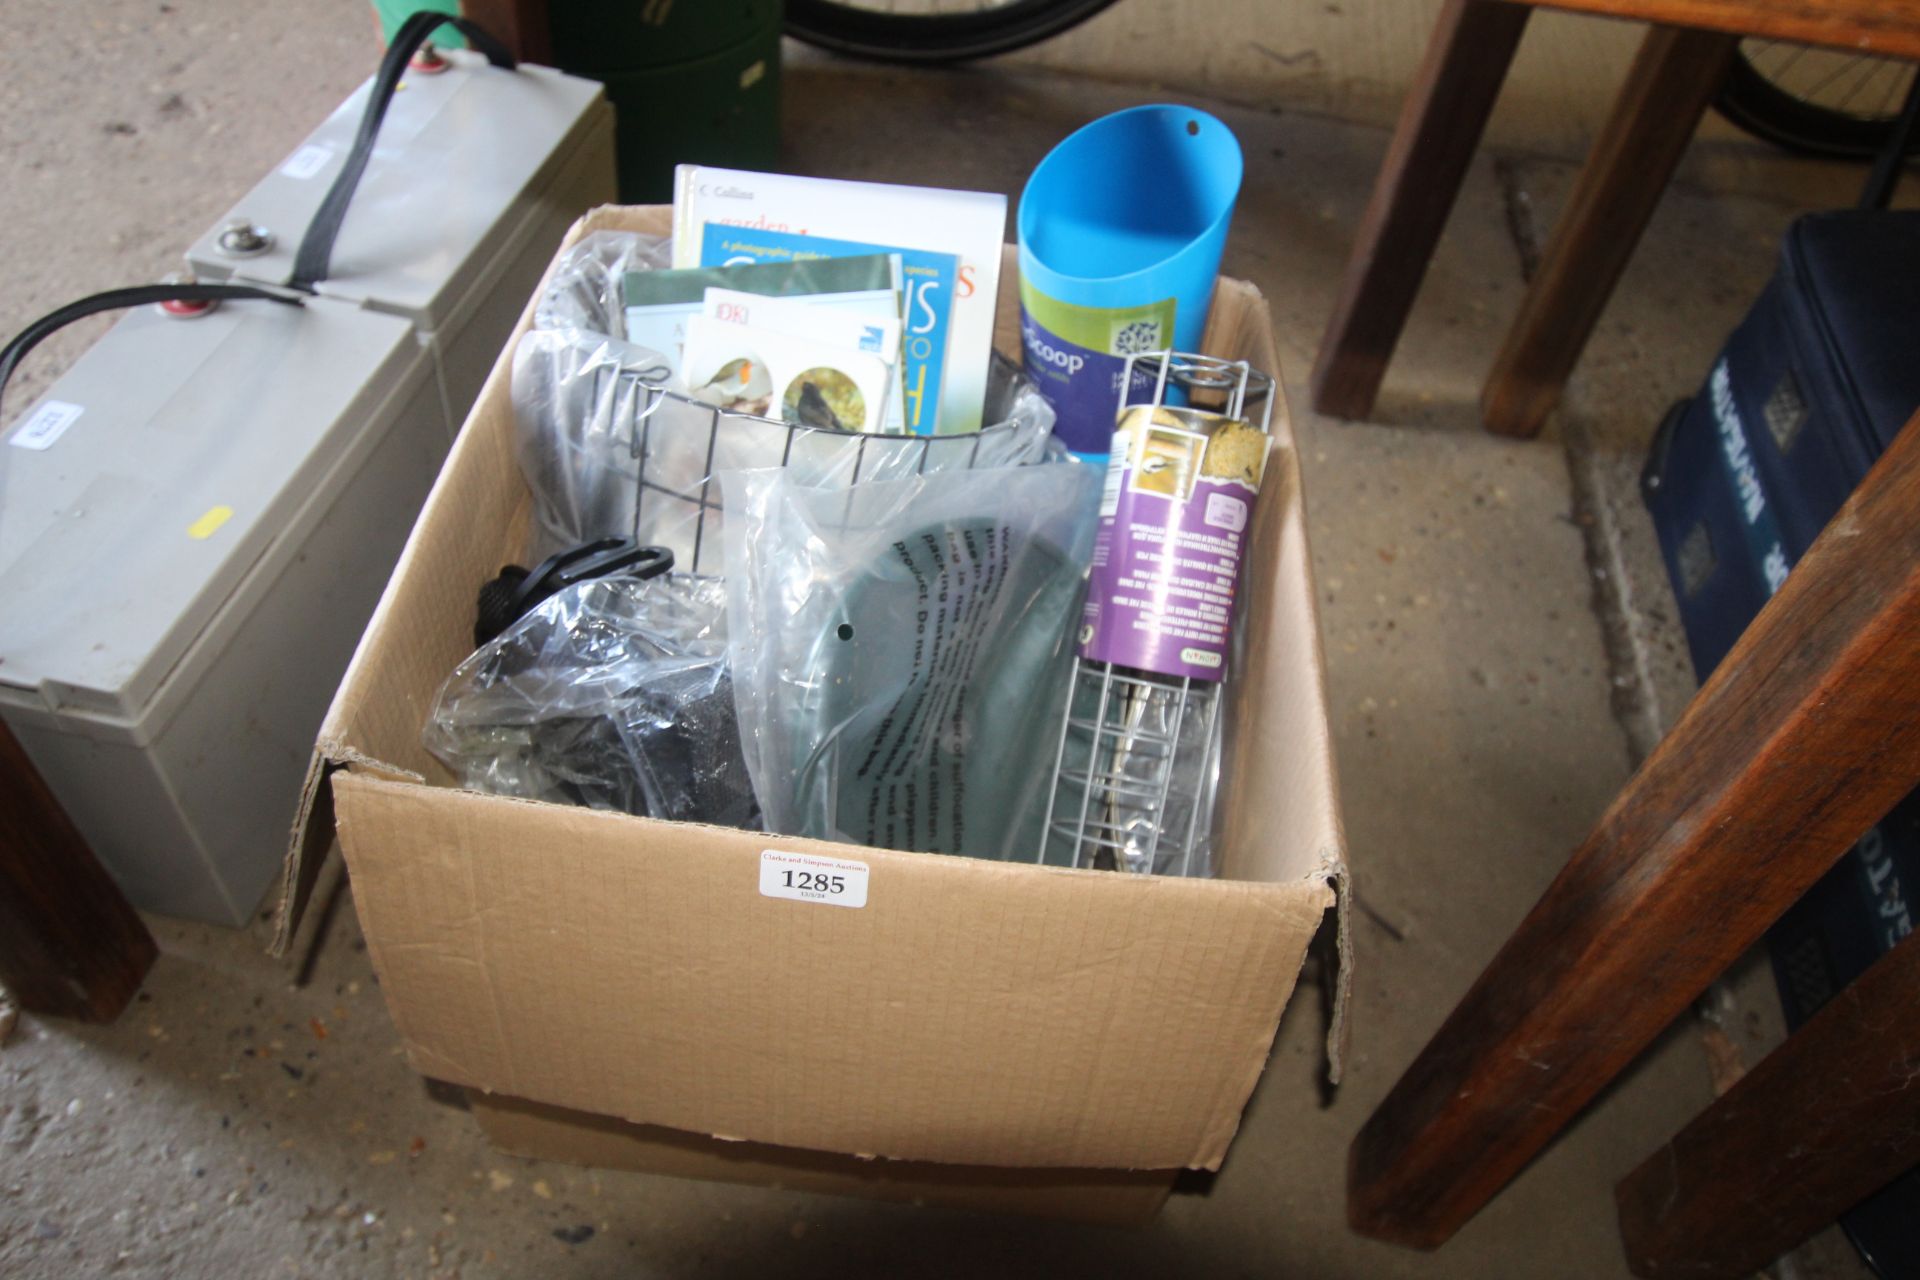 A box containing a quantity of items including bir